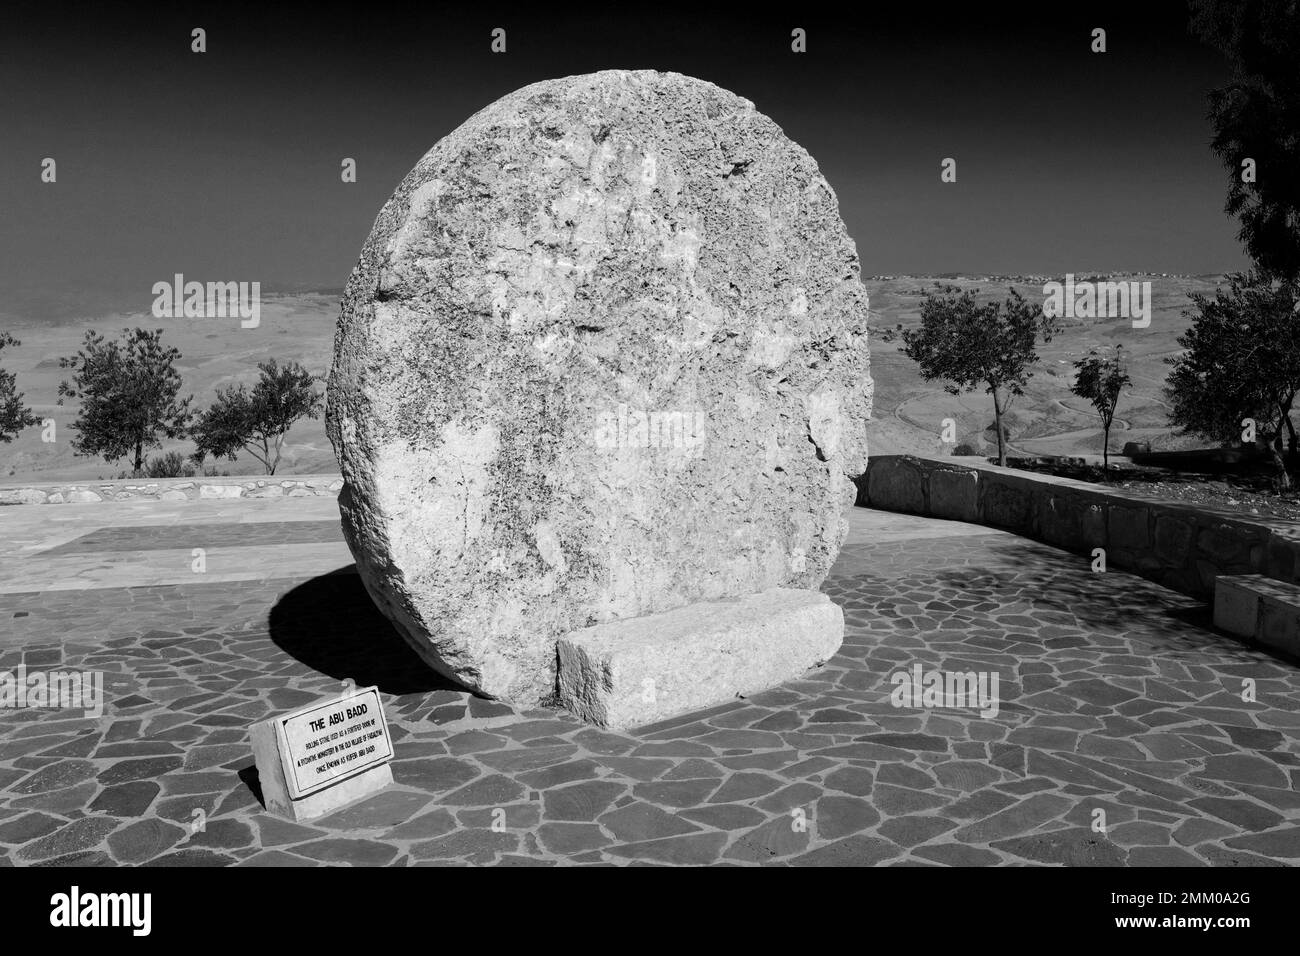 La pierre d'Abou Badd, porte fortifiée d'un monastère byzantin dans le vieux village de Faysaliyah, Mont Nebo, Jordanie, Moyen-Orient Banque D'Images